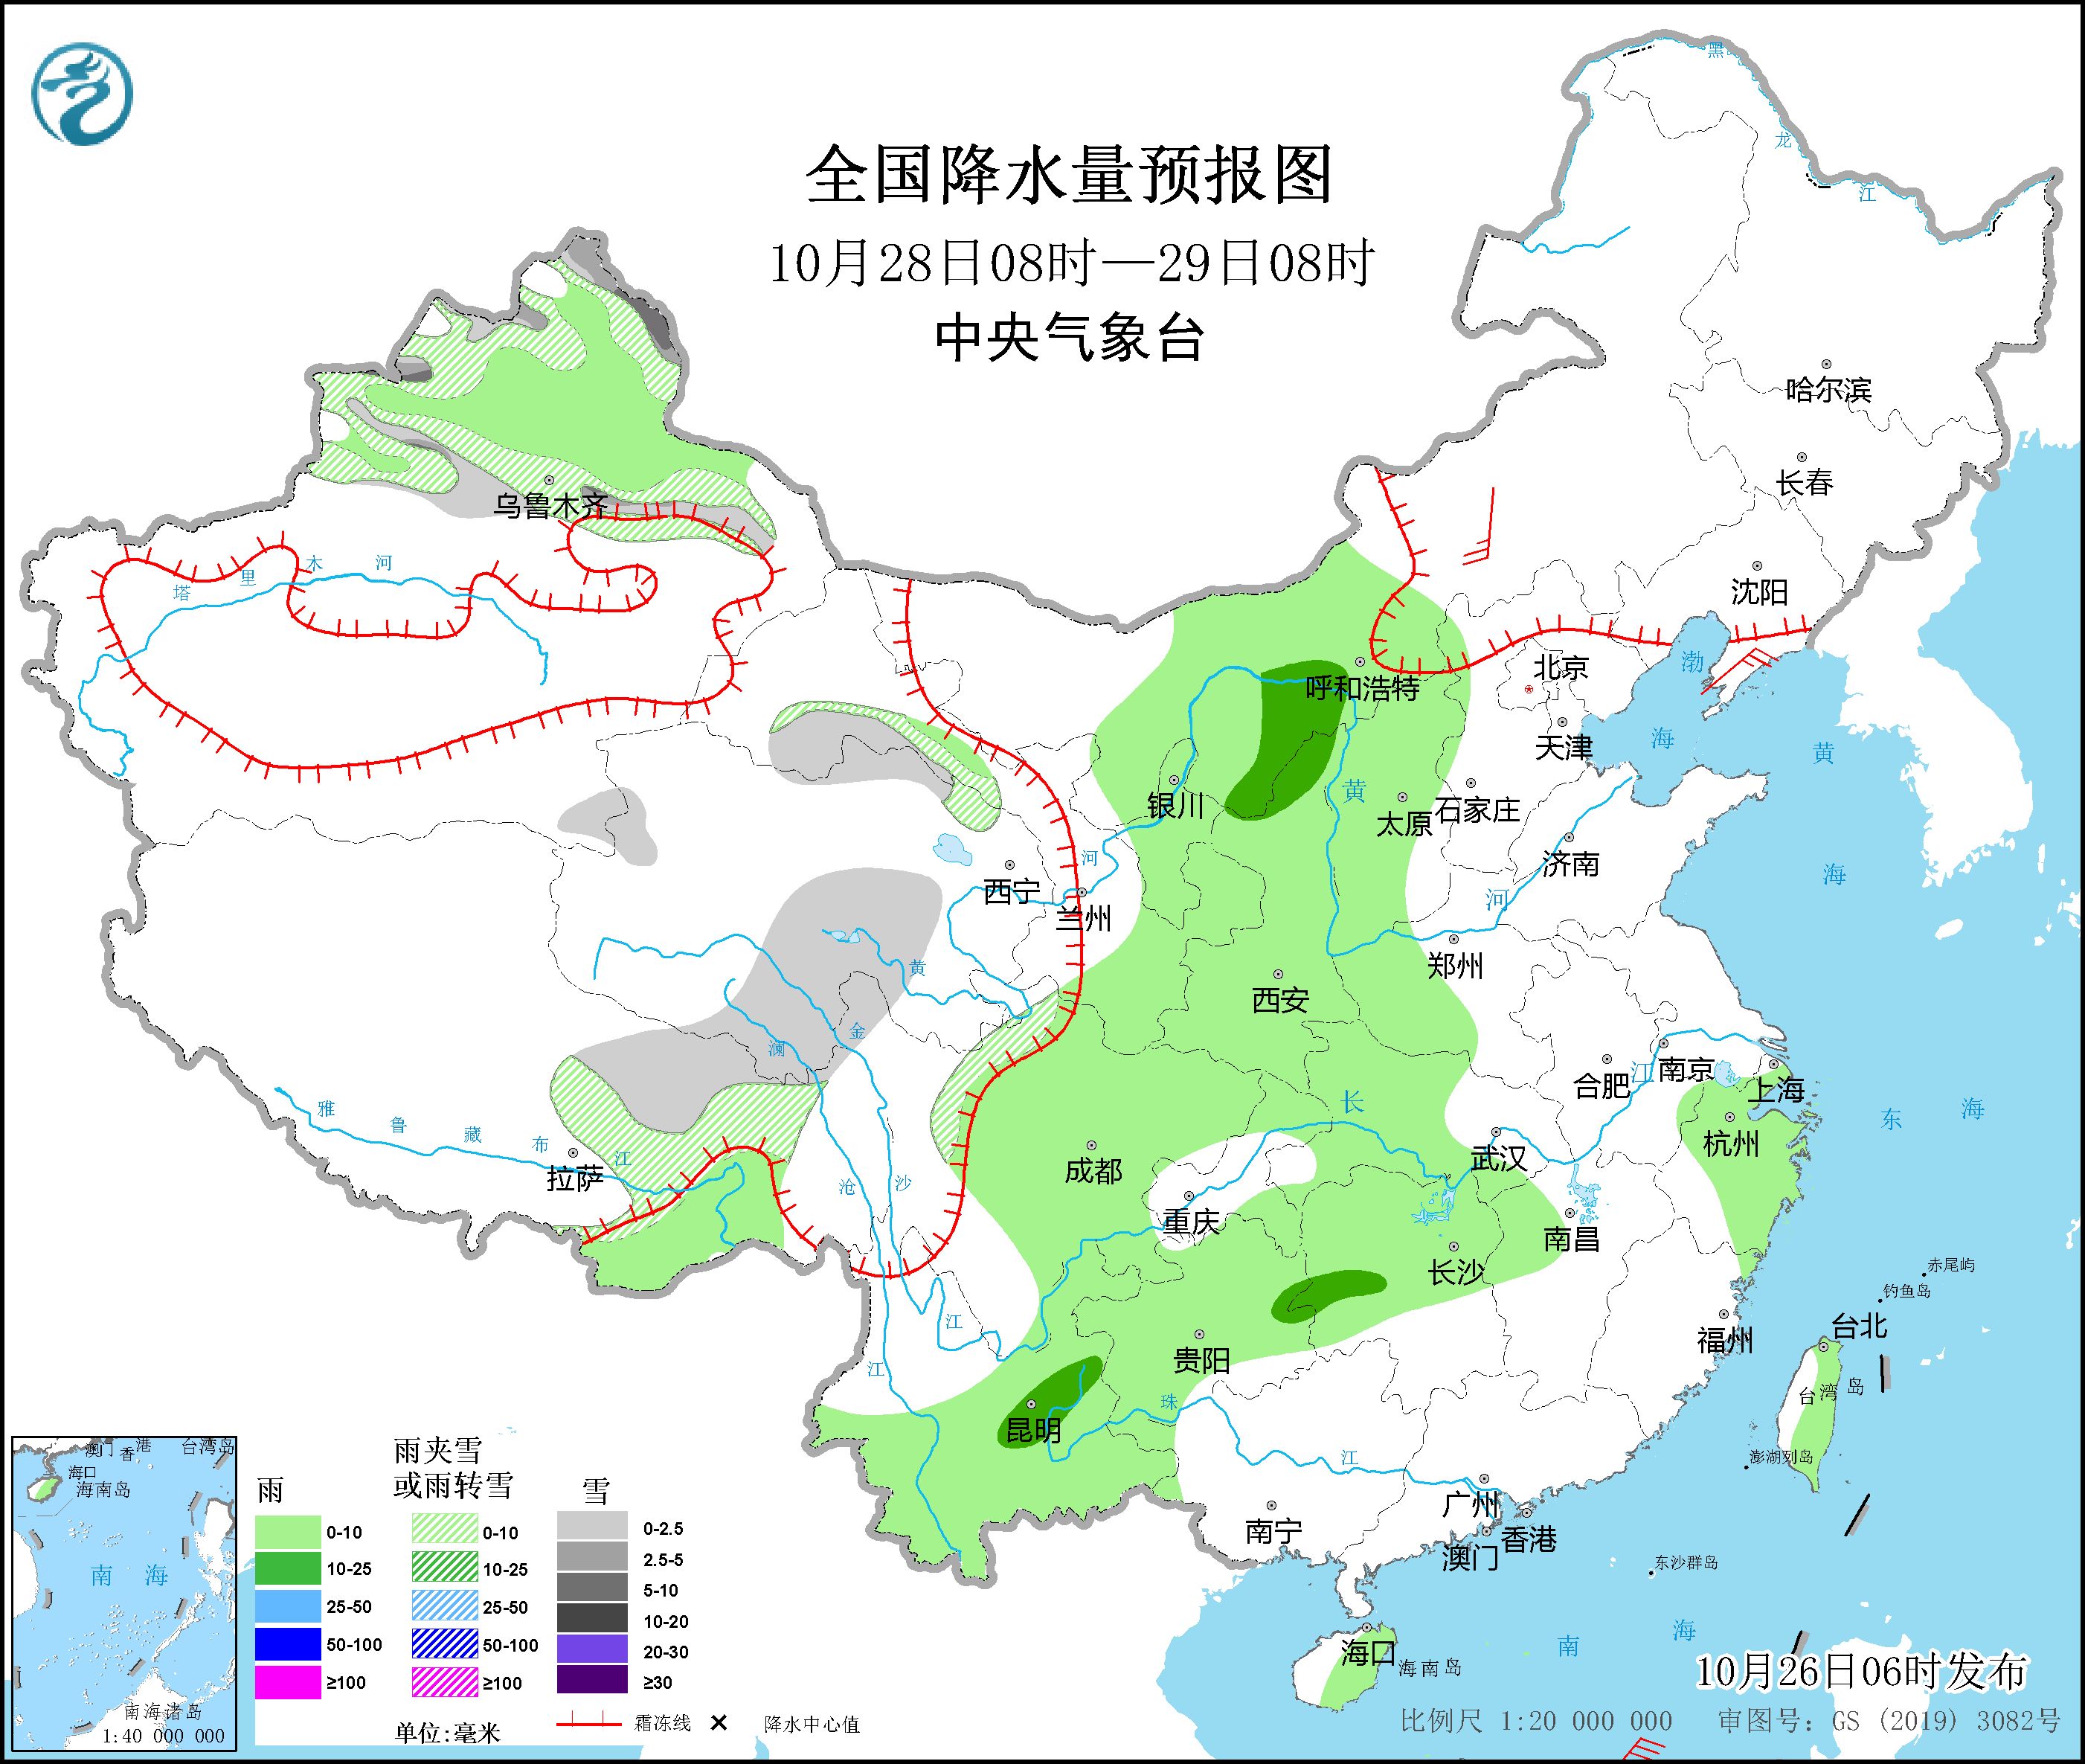 冷空气将影响东北地区和华北 西南地区江汉江南北部等地有阴雨天气